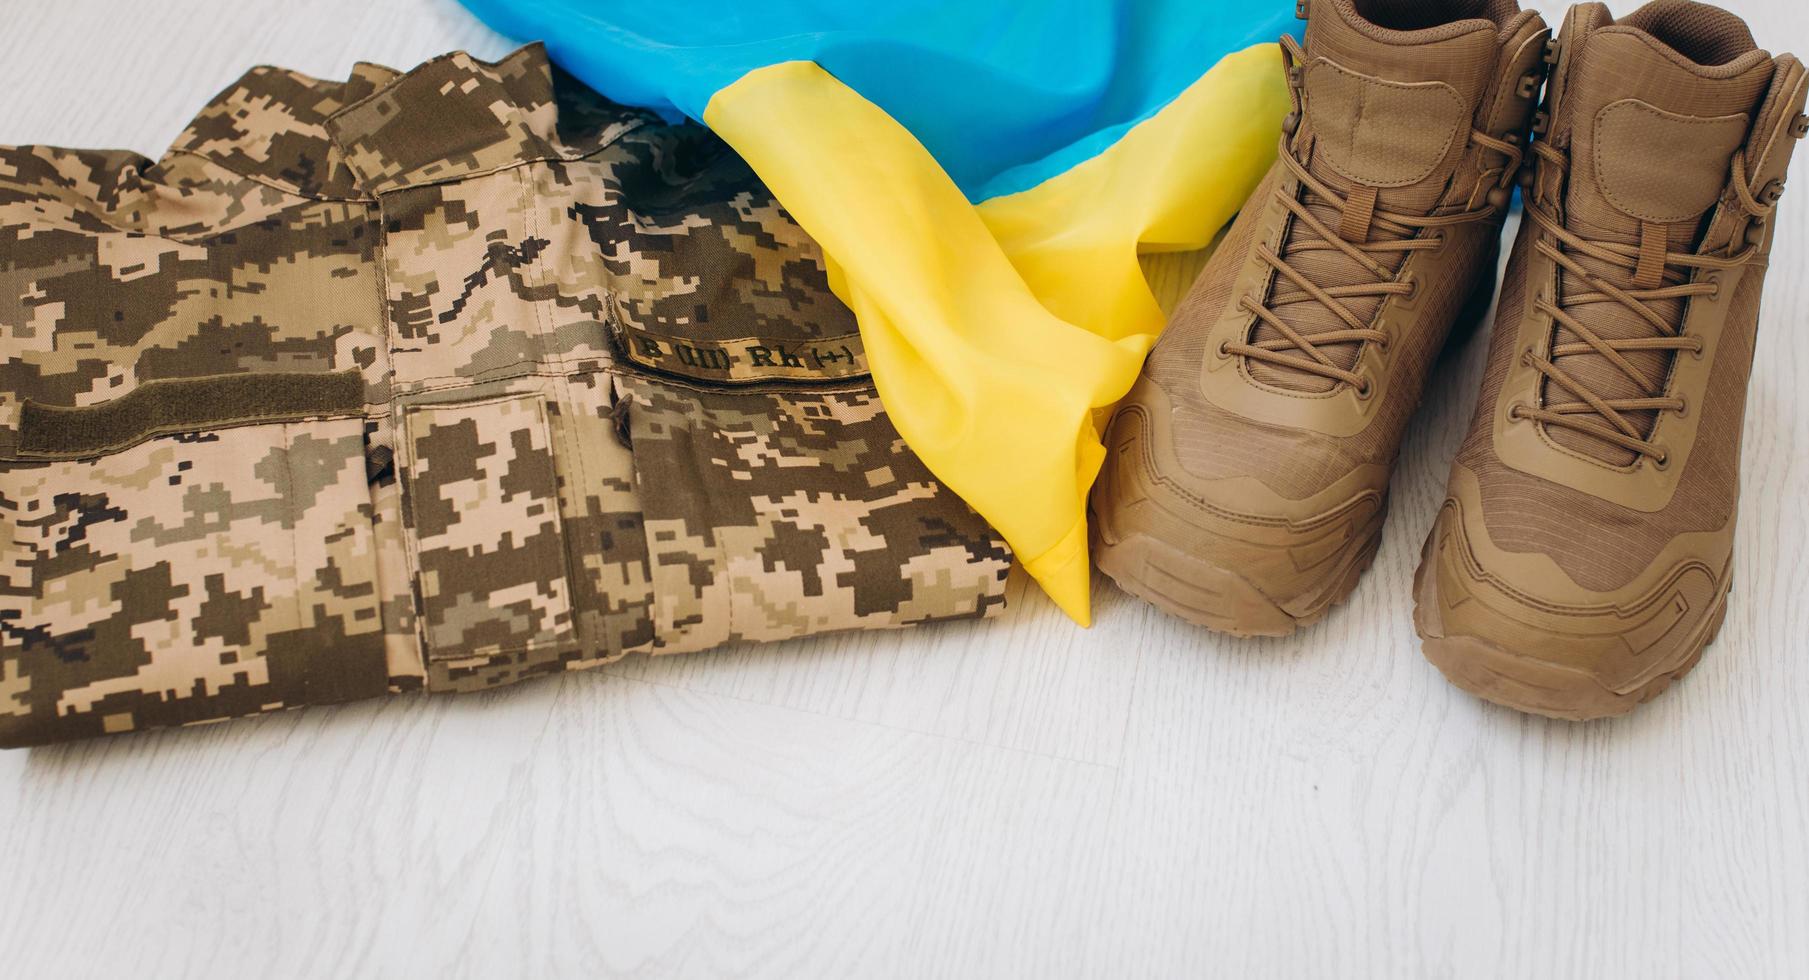 ukrainische militärkleidung, schuhe, jacke, flagge foto